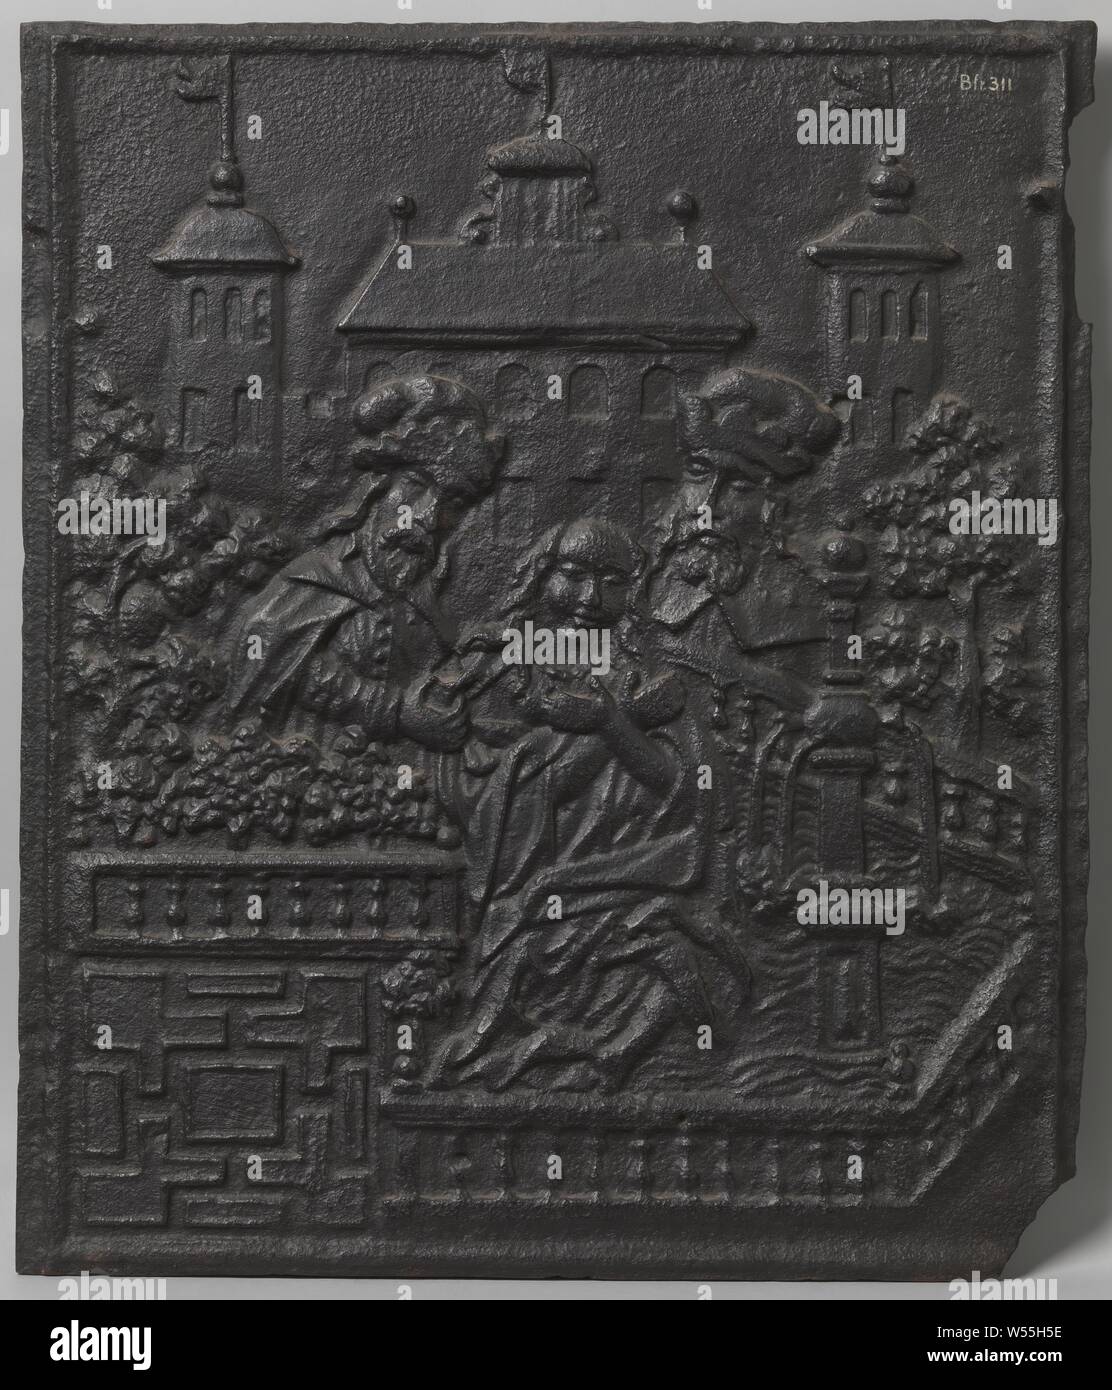 Plaque cuisinière dépeignant Suzanna et les personnes âgées, la plaque de poêle en fonte. Au milieu, l'habillé Suzanna est assis par une fontaine dans un jardin clos. Il est harcelé et touché par deux plus vieux barbus qui viennent de derrière les murs. Dans l'arrière-plan est un palais avec deux tours de côté visible, l'espionnage ailleurs sur Susanna, anonyme, Allemagne (peut-être), ch. 1650 - c. 1700, le fer (métal), fondation, h 67,0 cm × 56,0 cm × w w 39 kg Banque D'Images